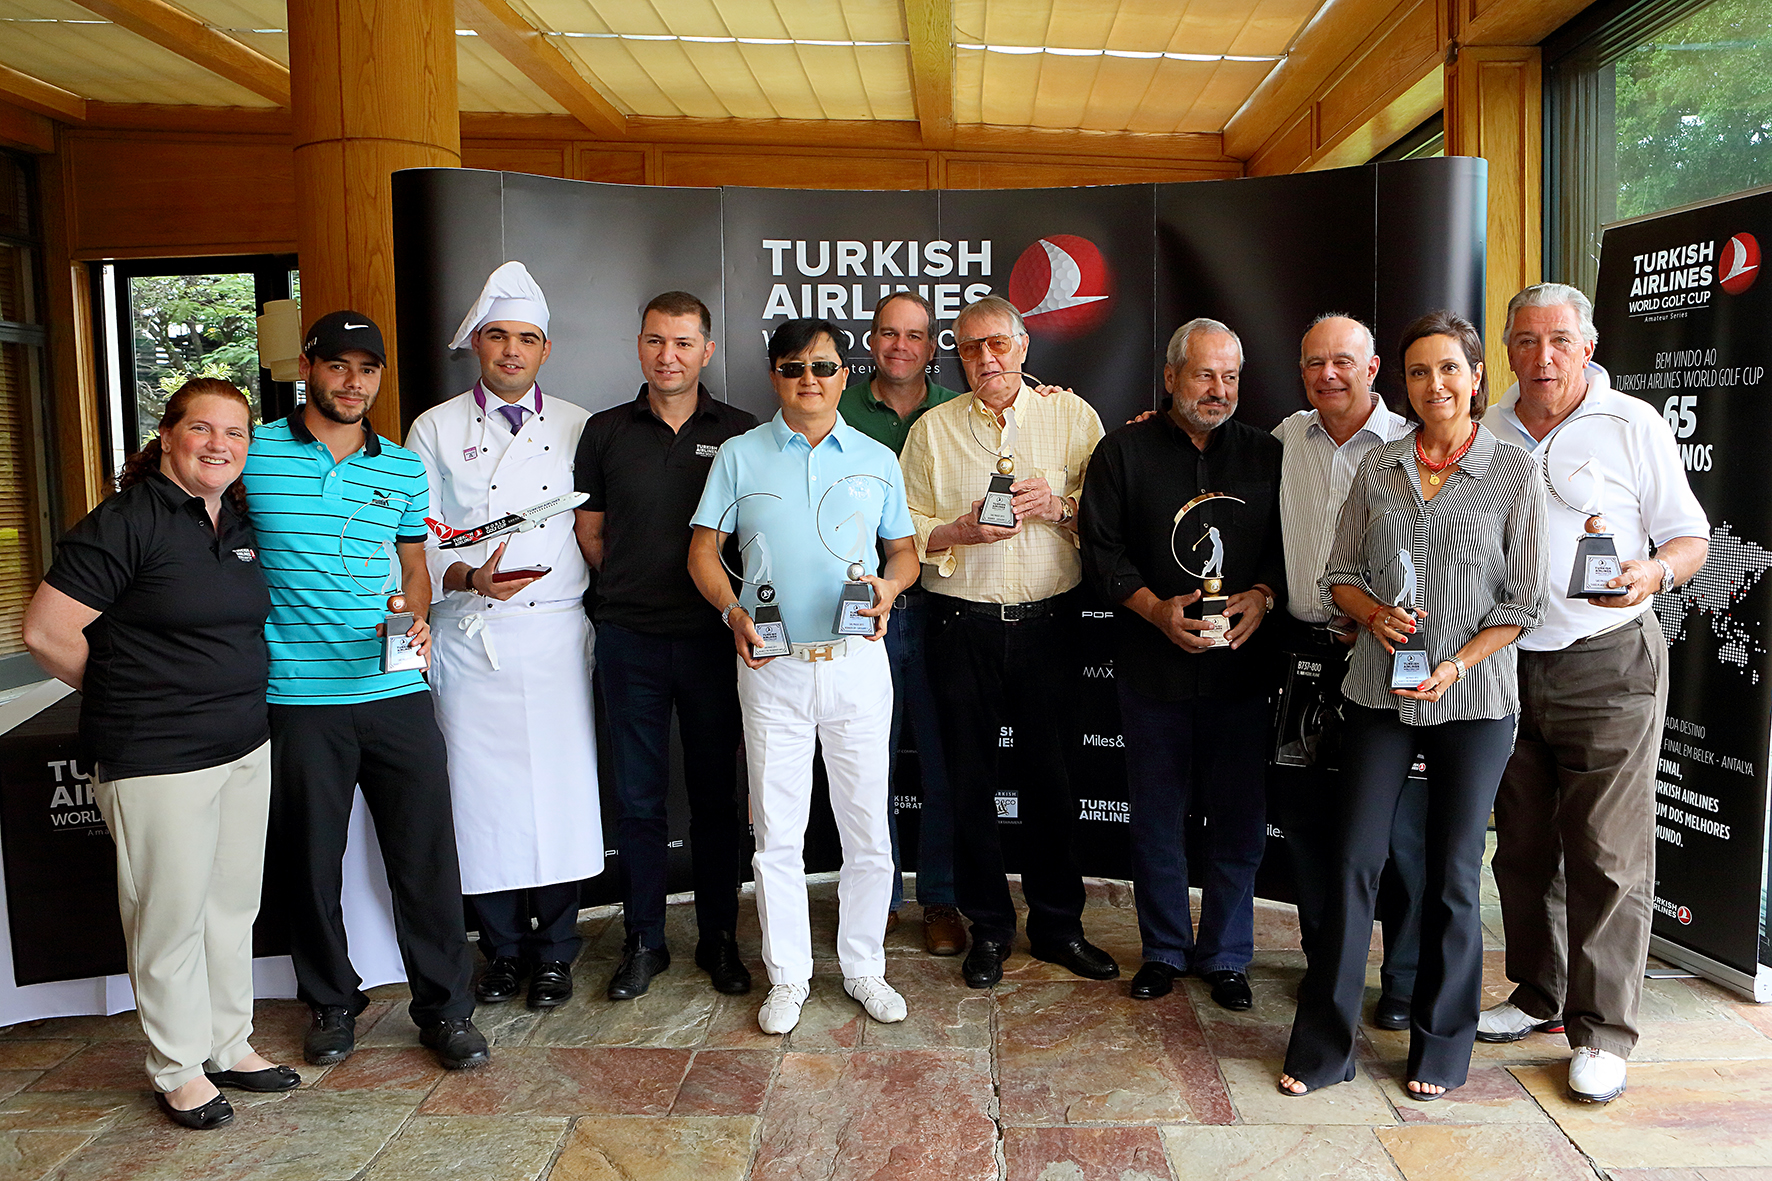 Turkish Airlines World Golf Cup – Amateur Series reuniu 120 pessoas em São Paulo